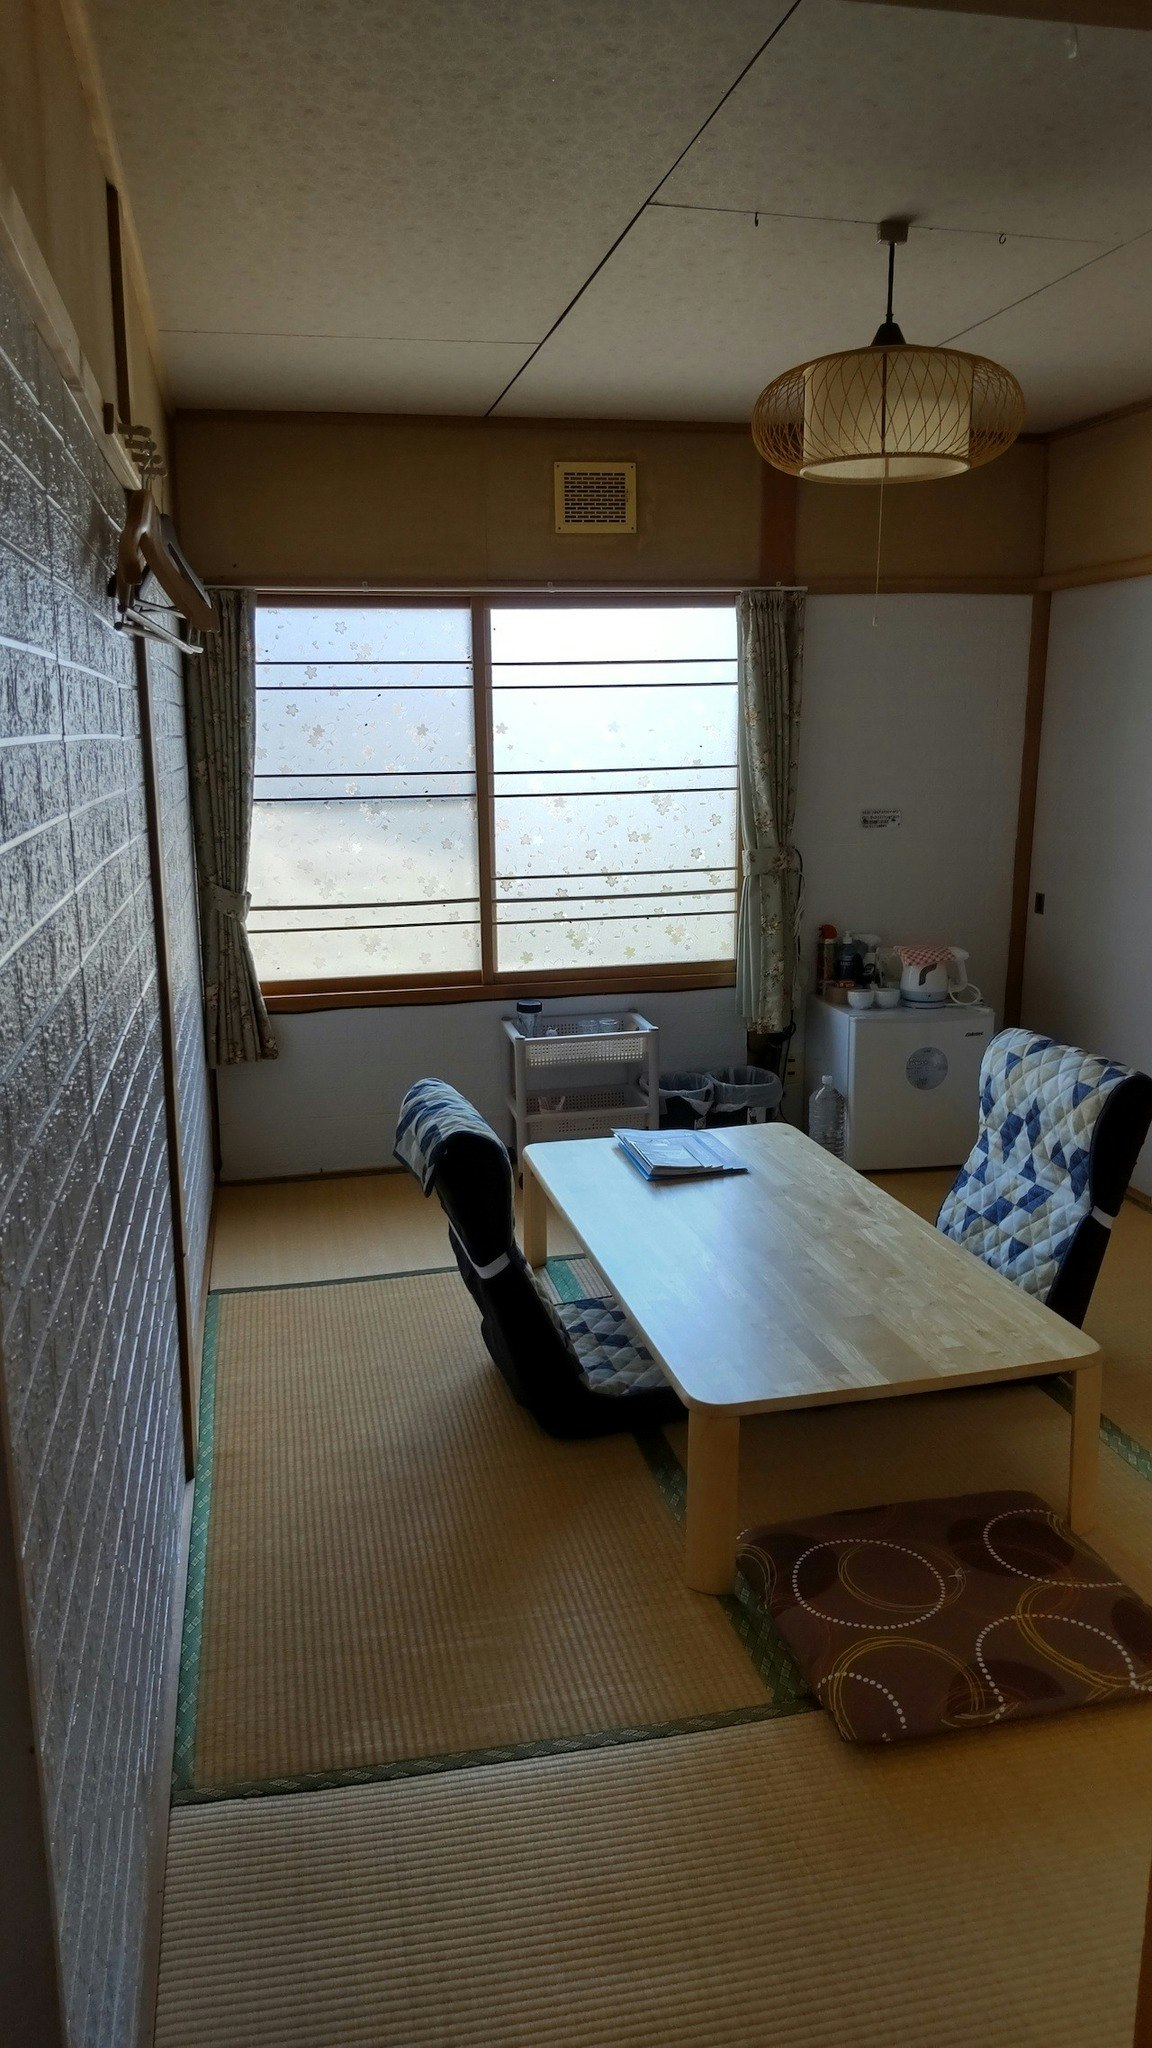 宿泊室1★最寄バス停から徒歩10分♪北海道北湯沢温泉が楽しめます!